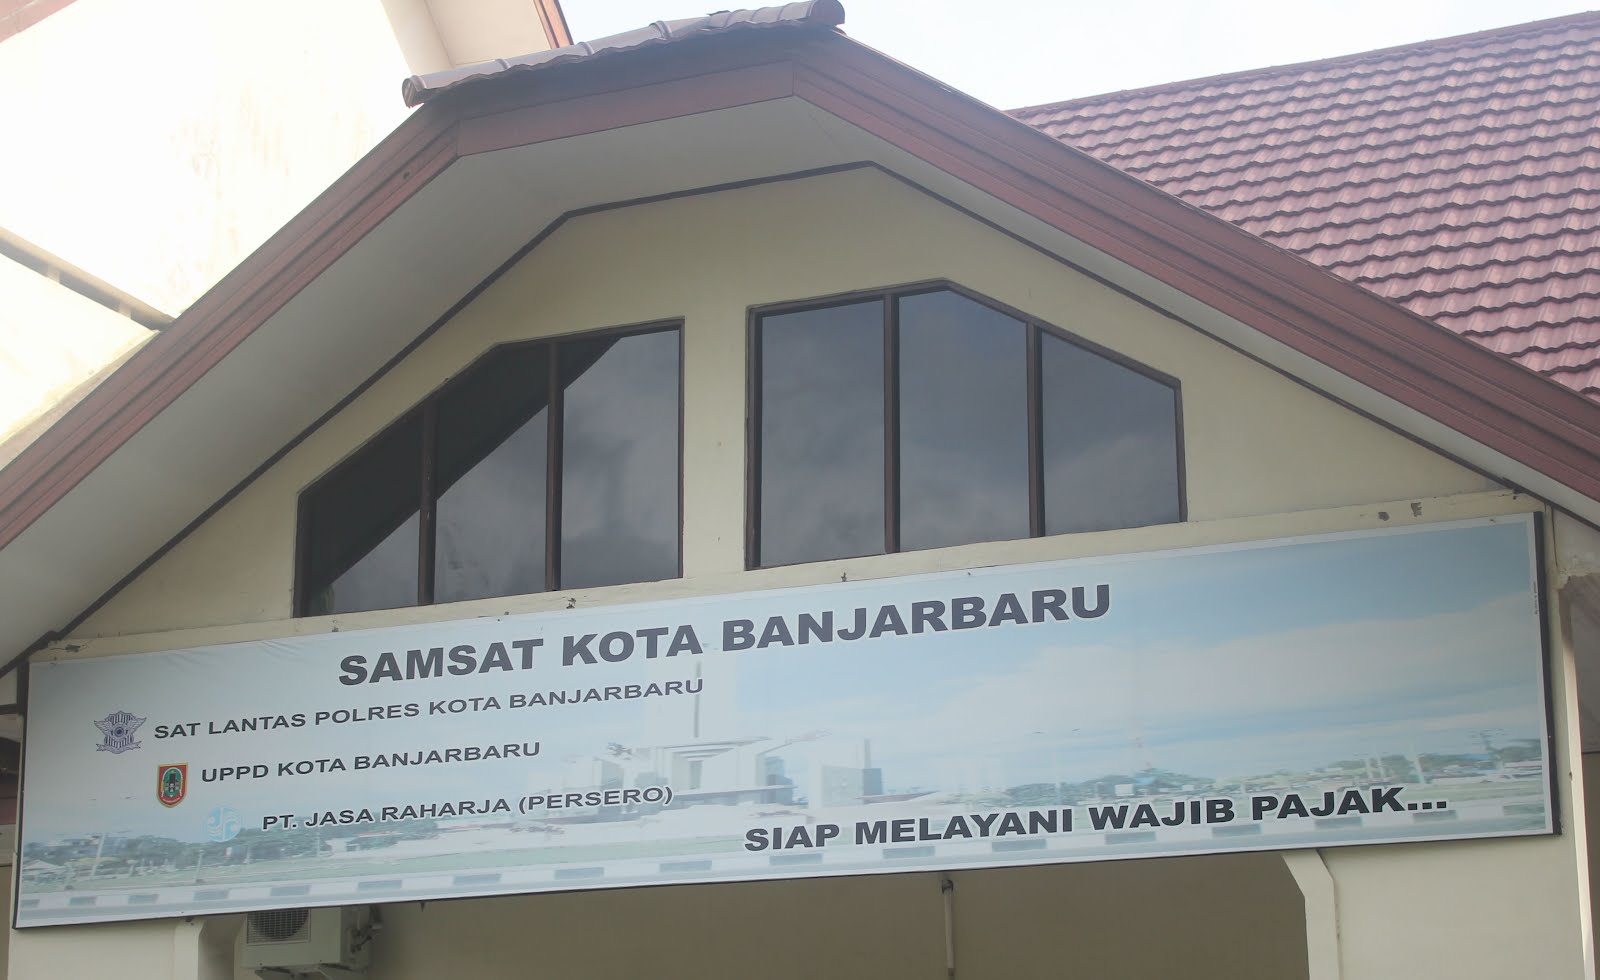 UPPD / Kantor Bersama Samsat Banjarbaru